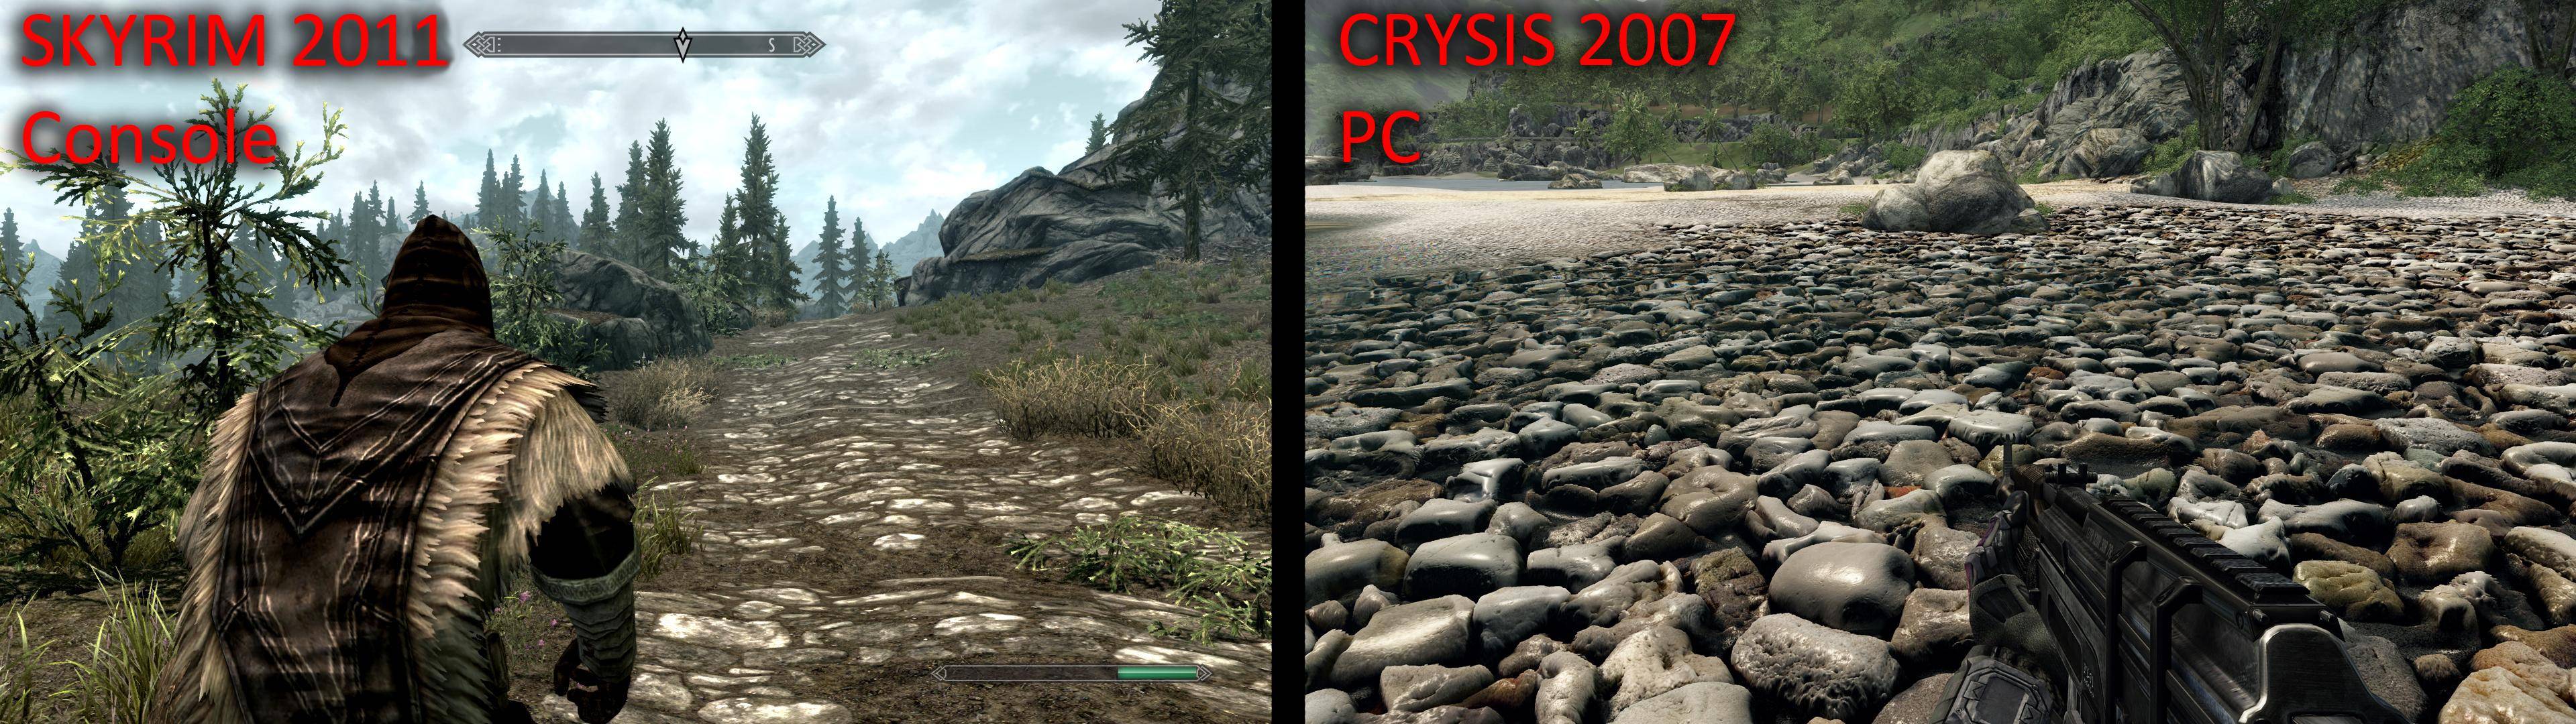 skyrim console vs pc meme - Crysis 2007 Pc